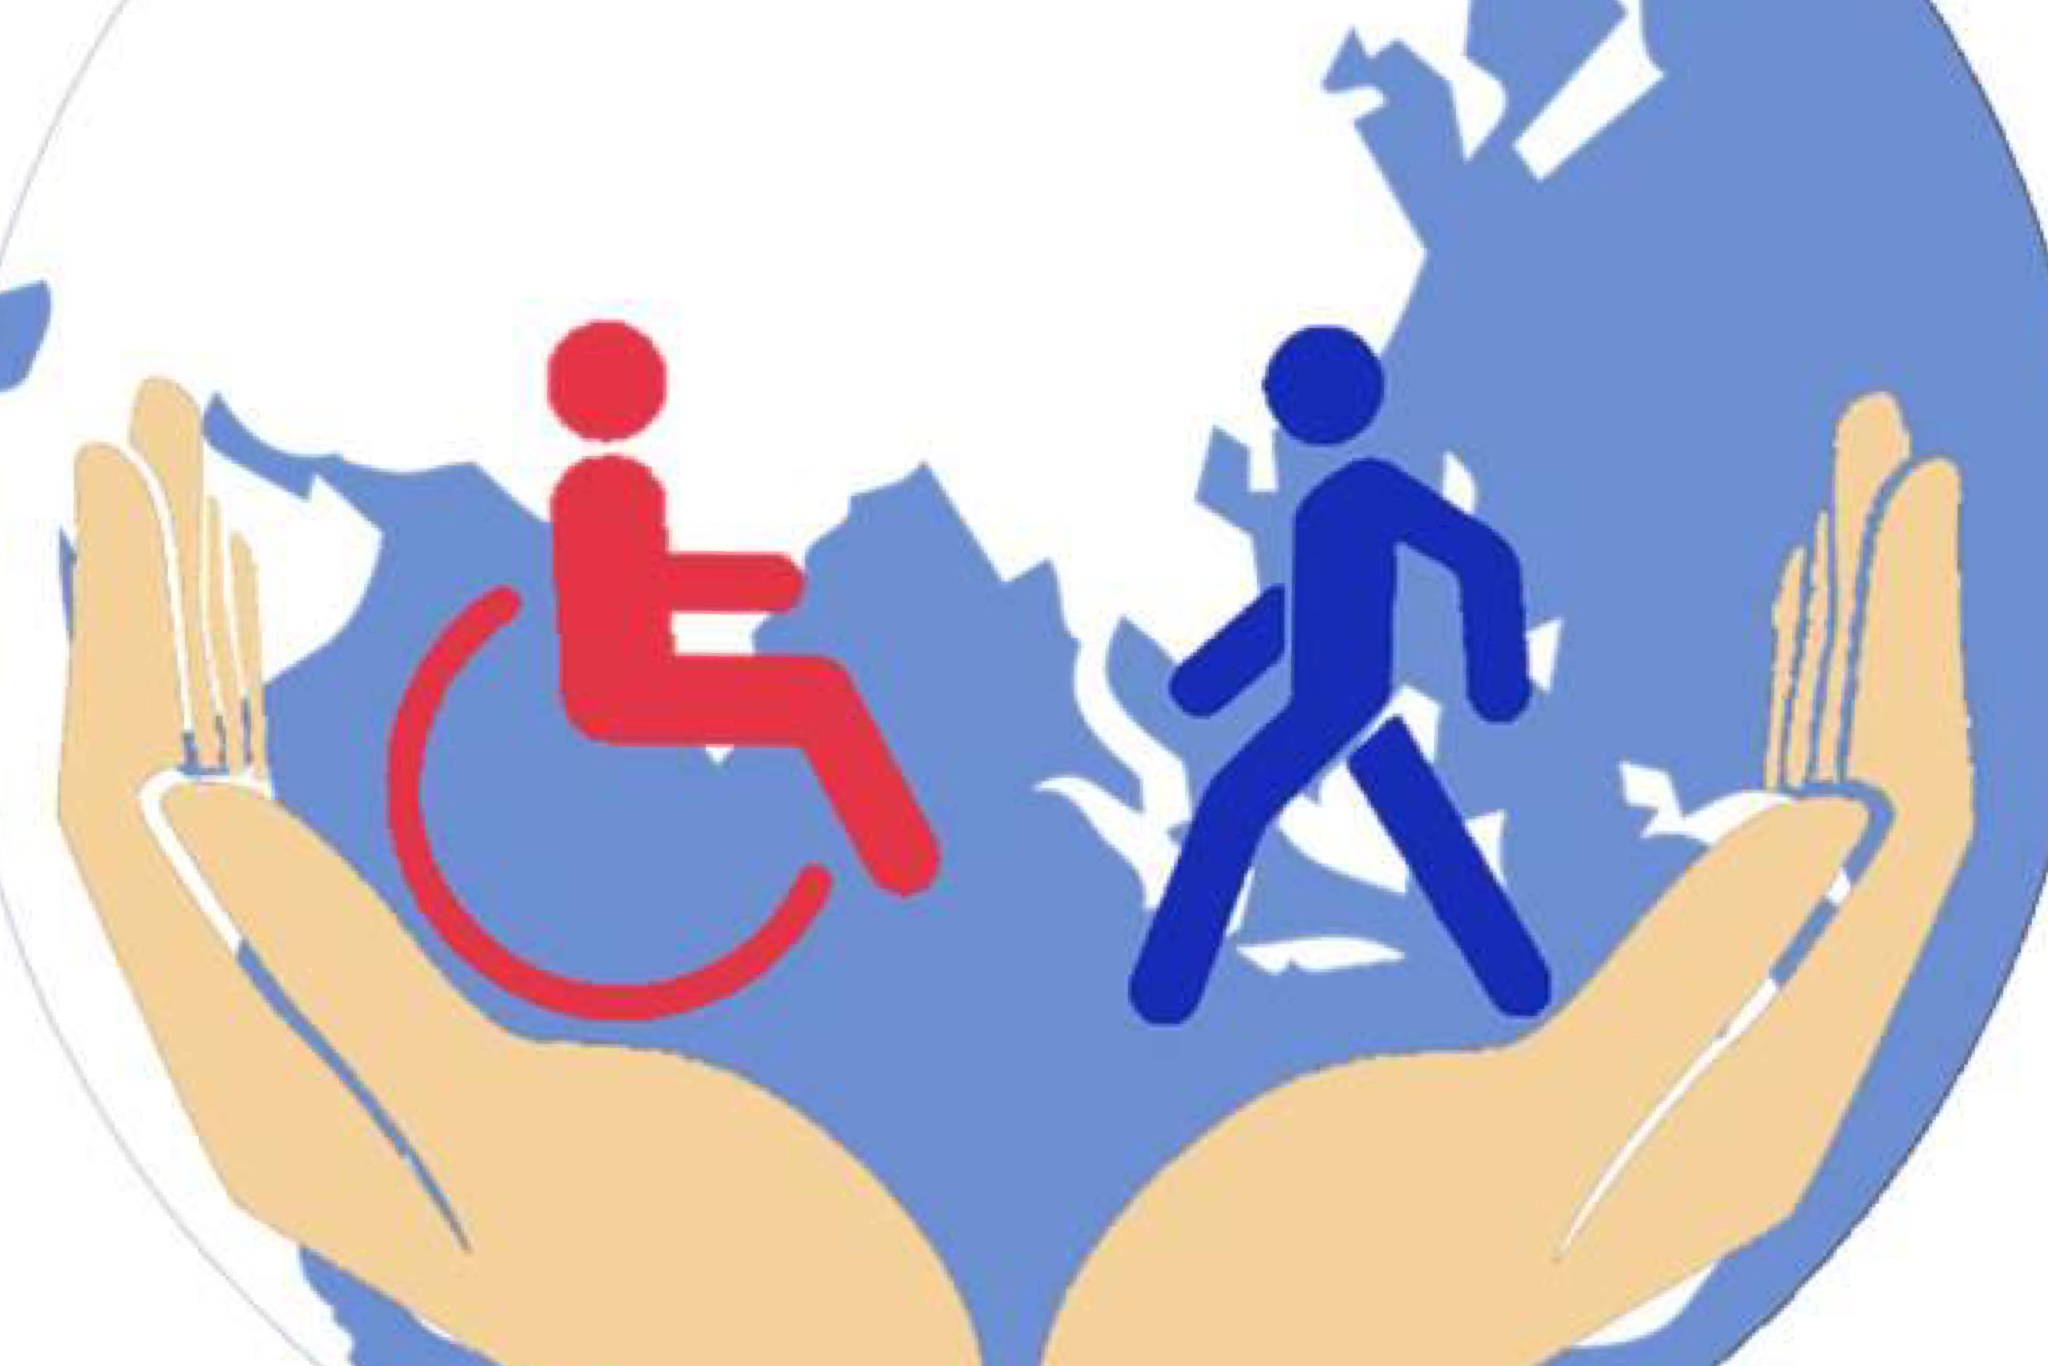 Социальная защита детей и молодежи. Защита инвалидов. Соц защита инвалидов. Инвалиды в социуме. Социальная защита людей с ограниченными возможностями.